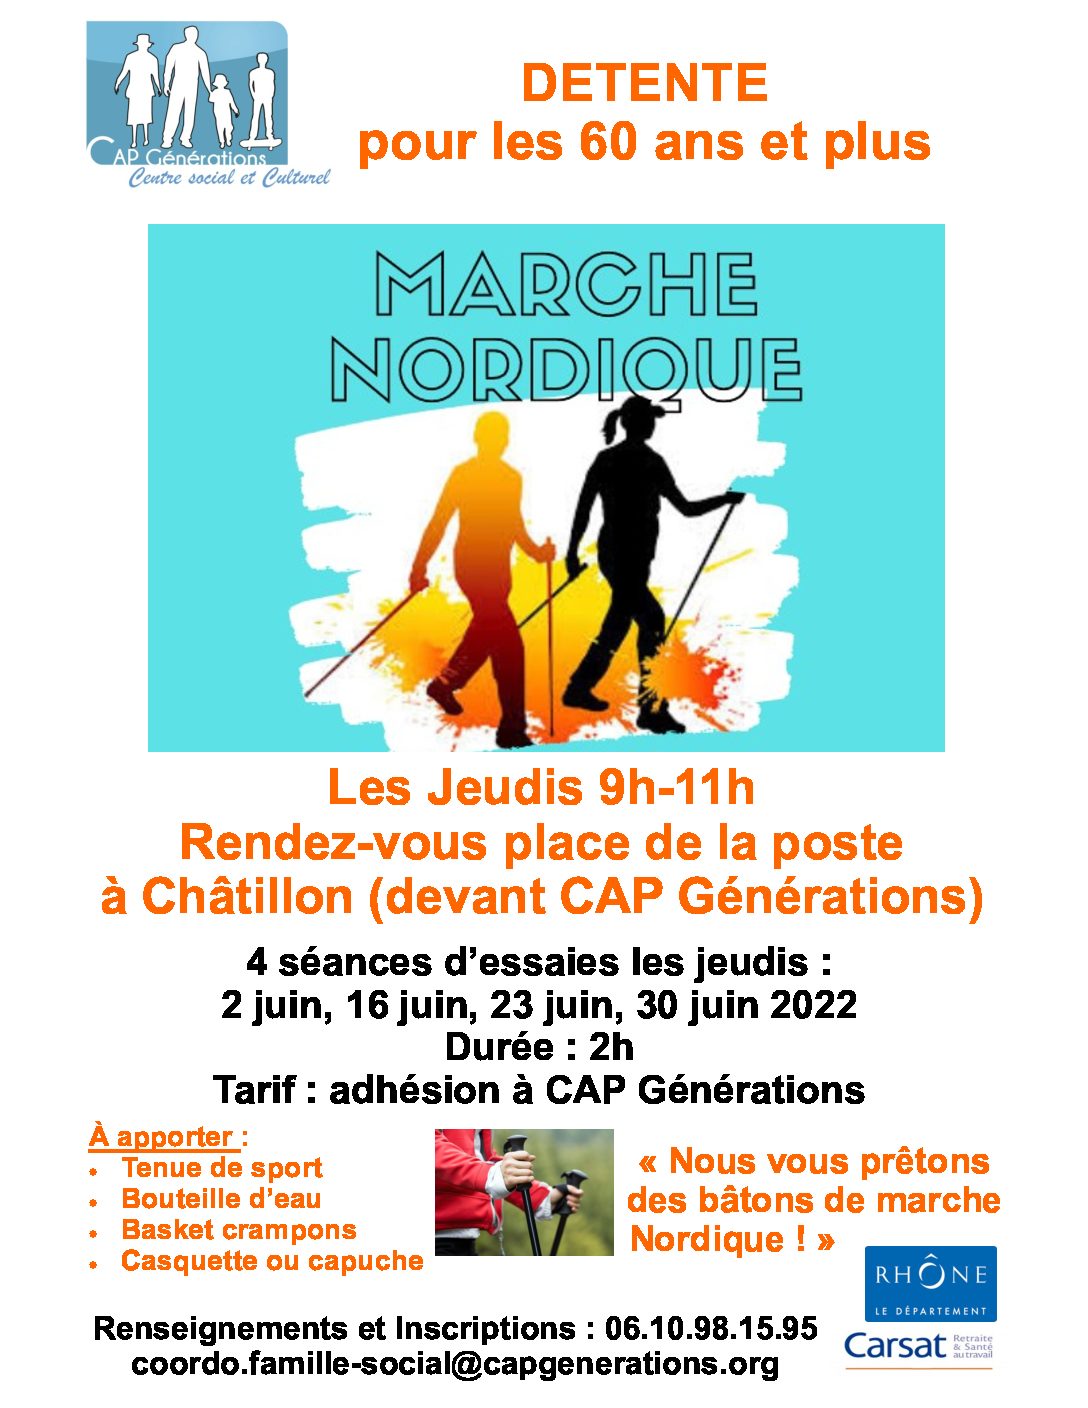 NOUVEAU : Marche Nordique « DETENTE »